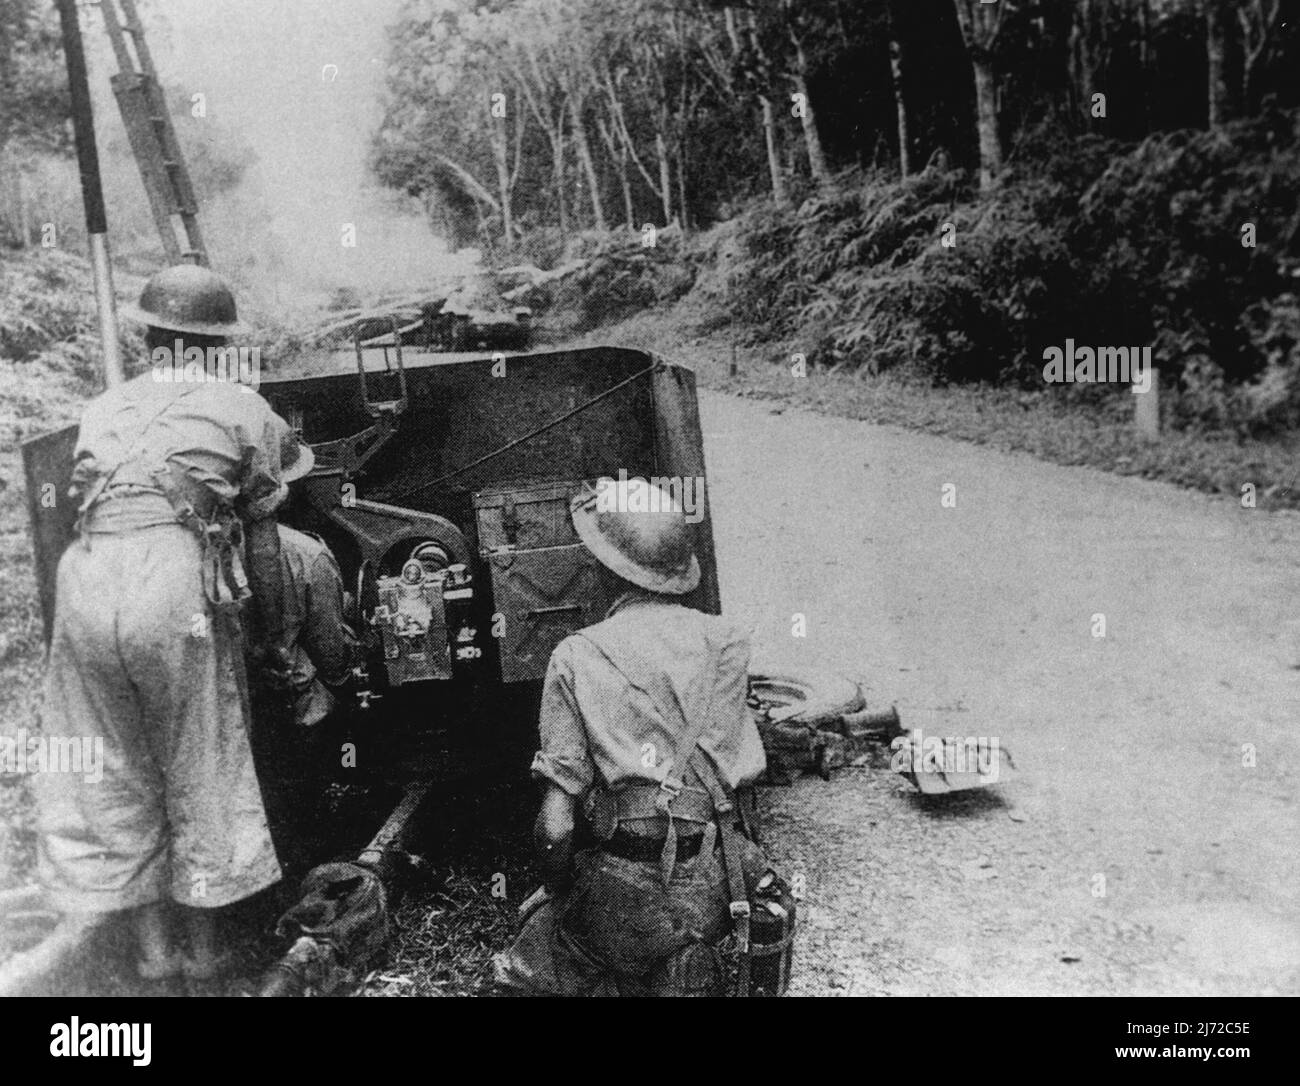 Equipos de cañón antitanque en acción contra la Guardia Imperial. Resistencia: Las tripulaciones de armas antitanque australianas pusieron una fuerte resistencia a la Guardia Imperial en 1942. 1 de enero de 1942. Foto de stock